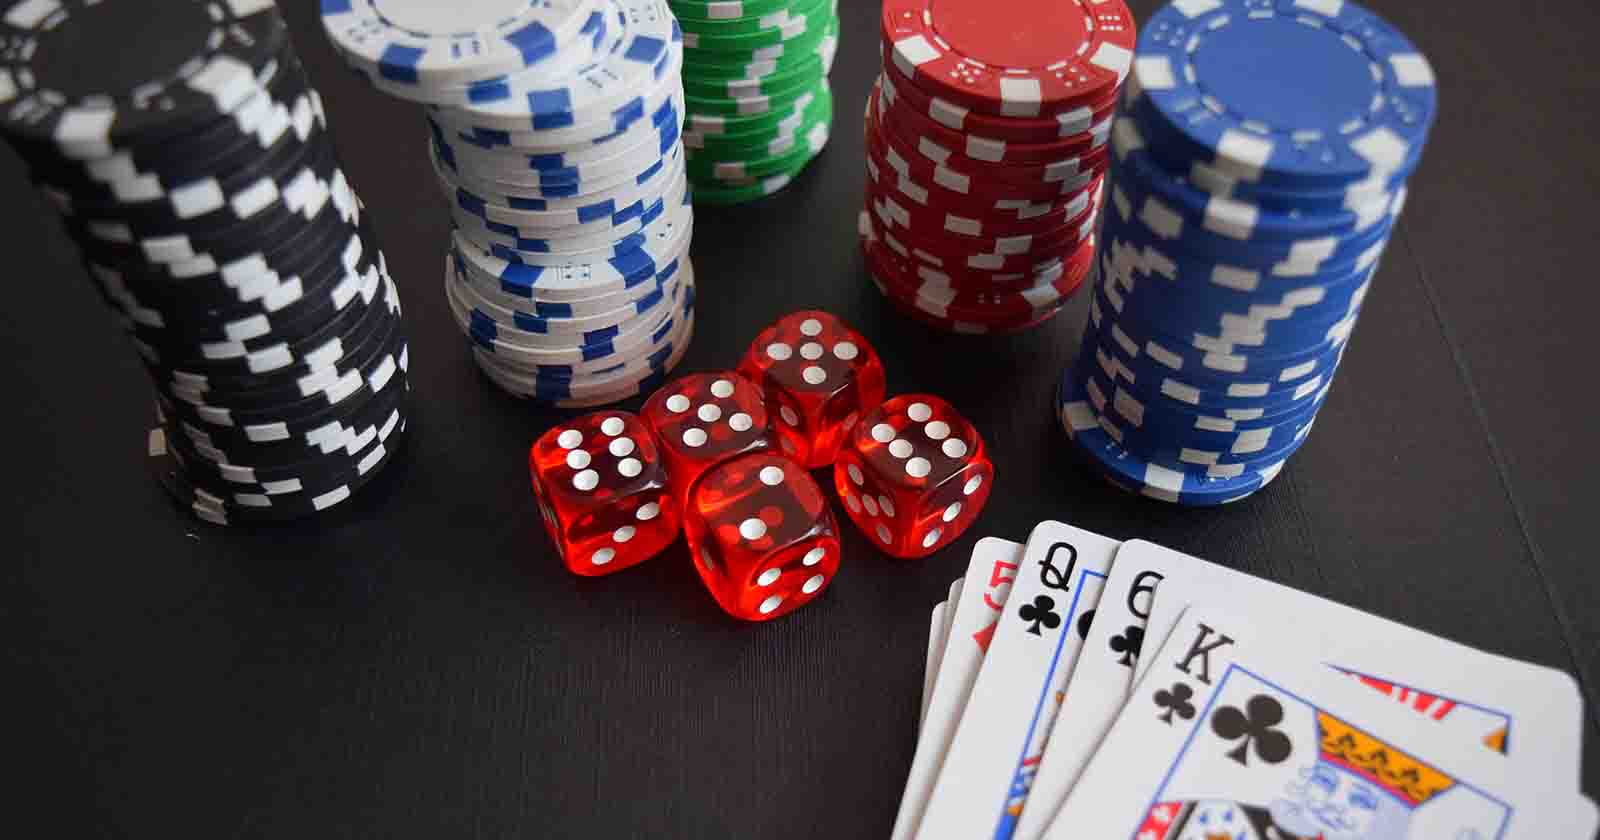 Domina el arte de casinos con dinero real con estos 3 consejos